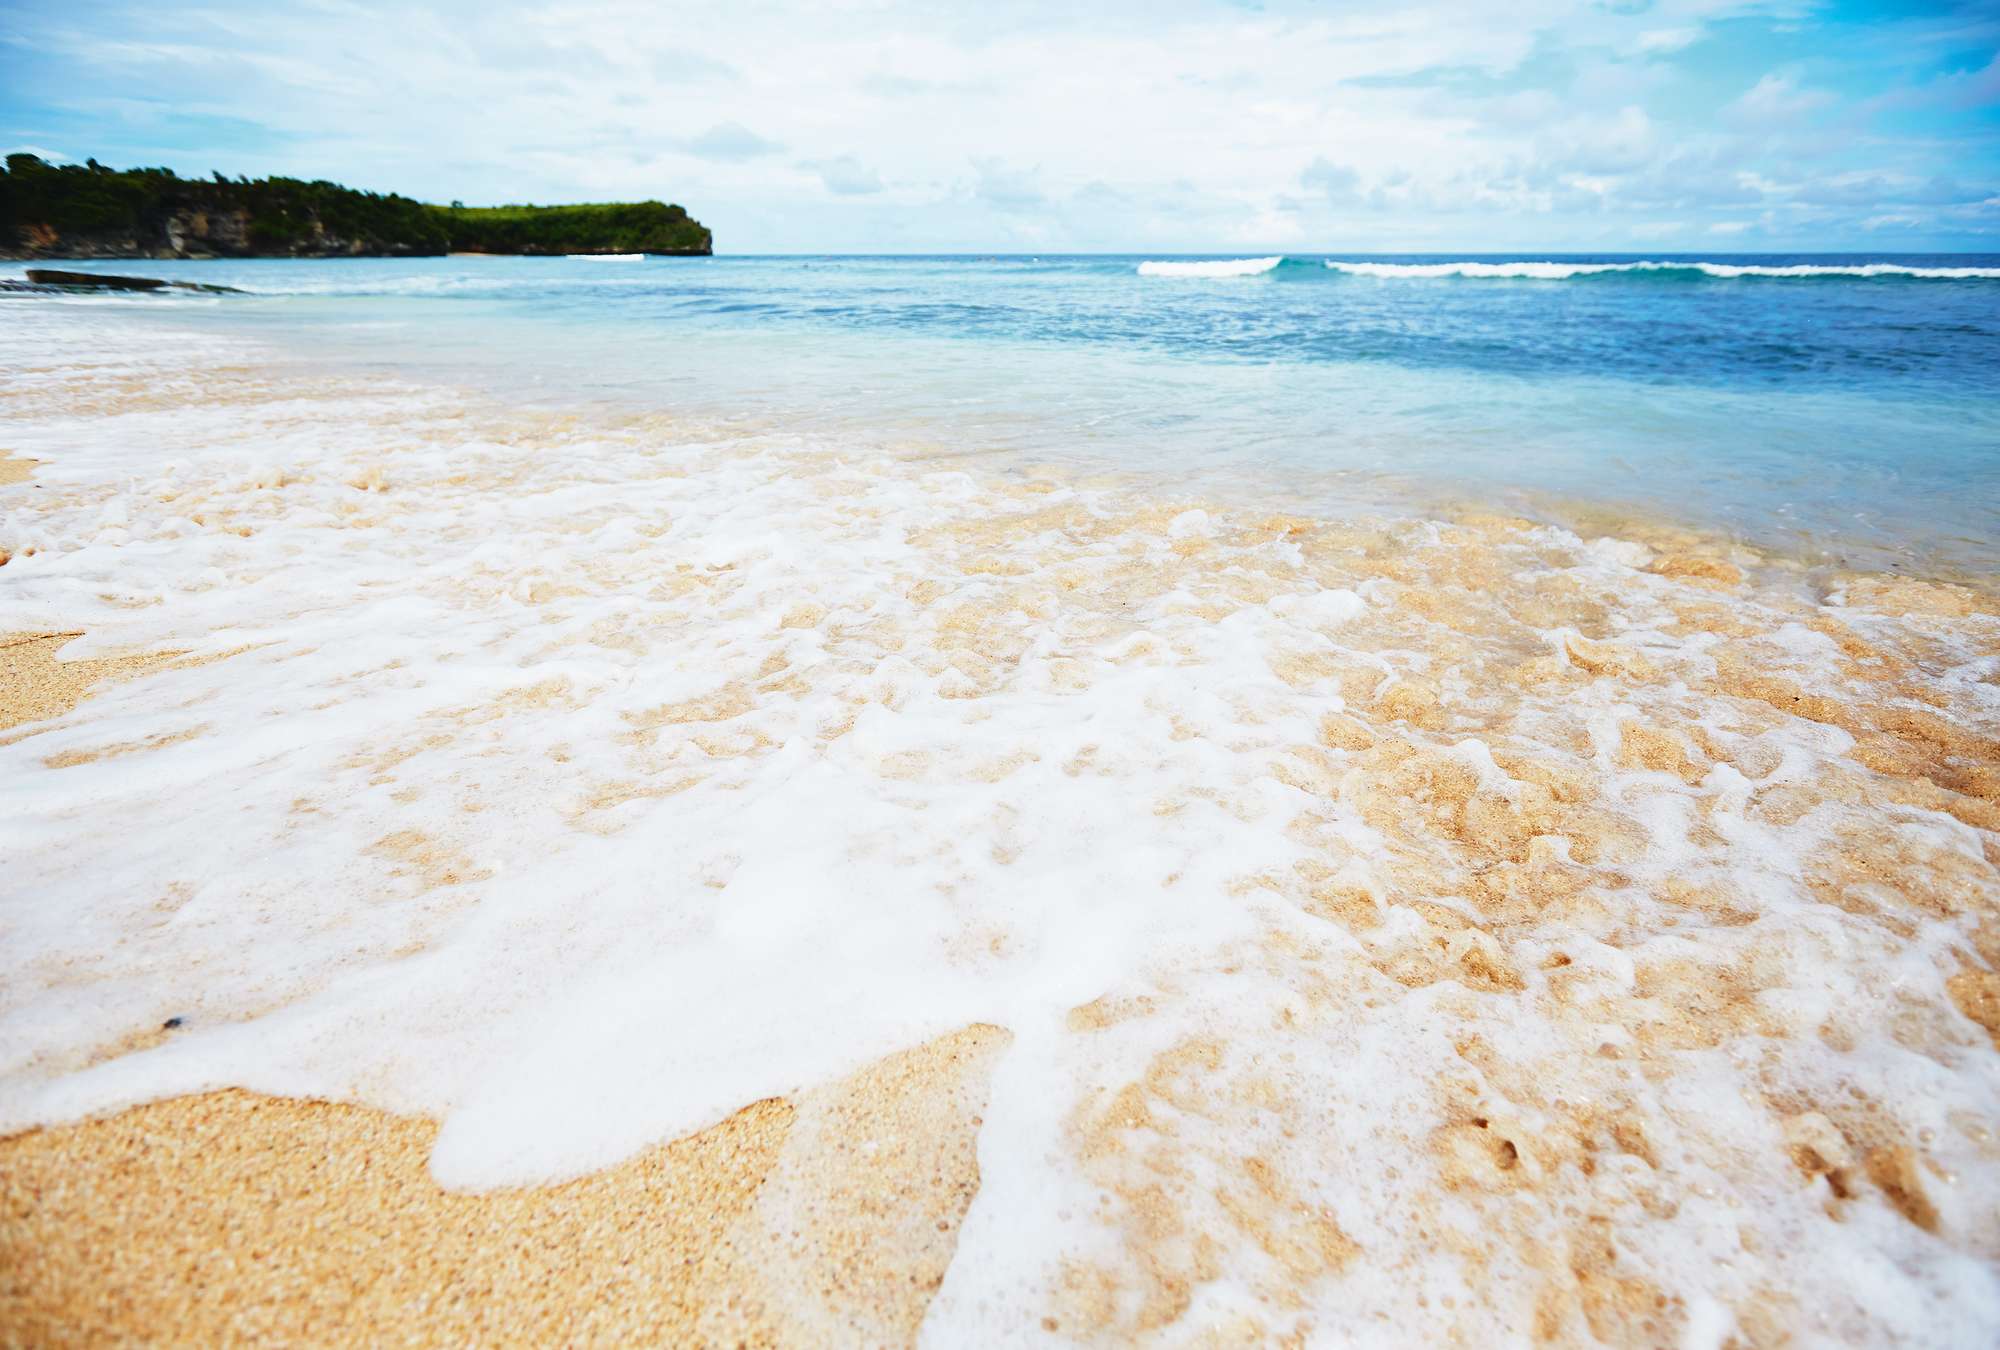             Fototapete Sandstrand auf Bali mit schäumenden Wellen
        